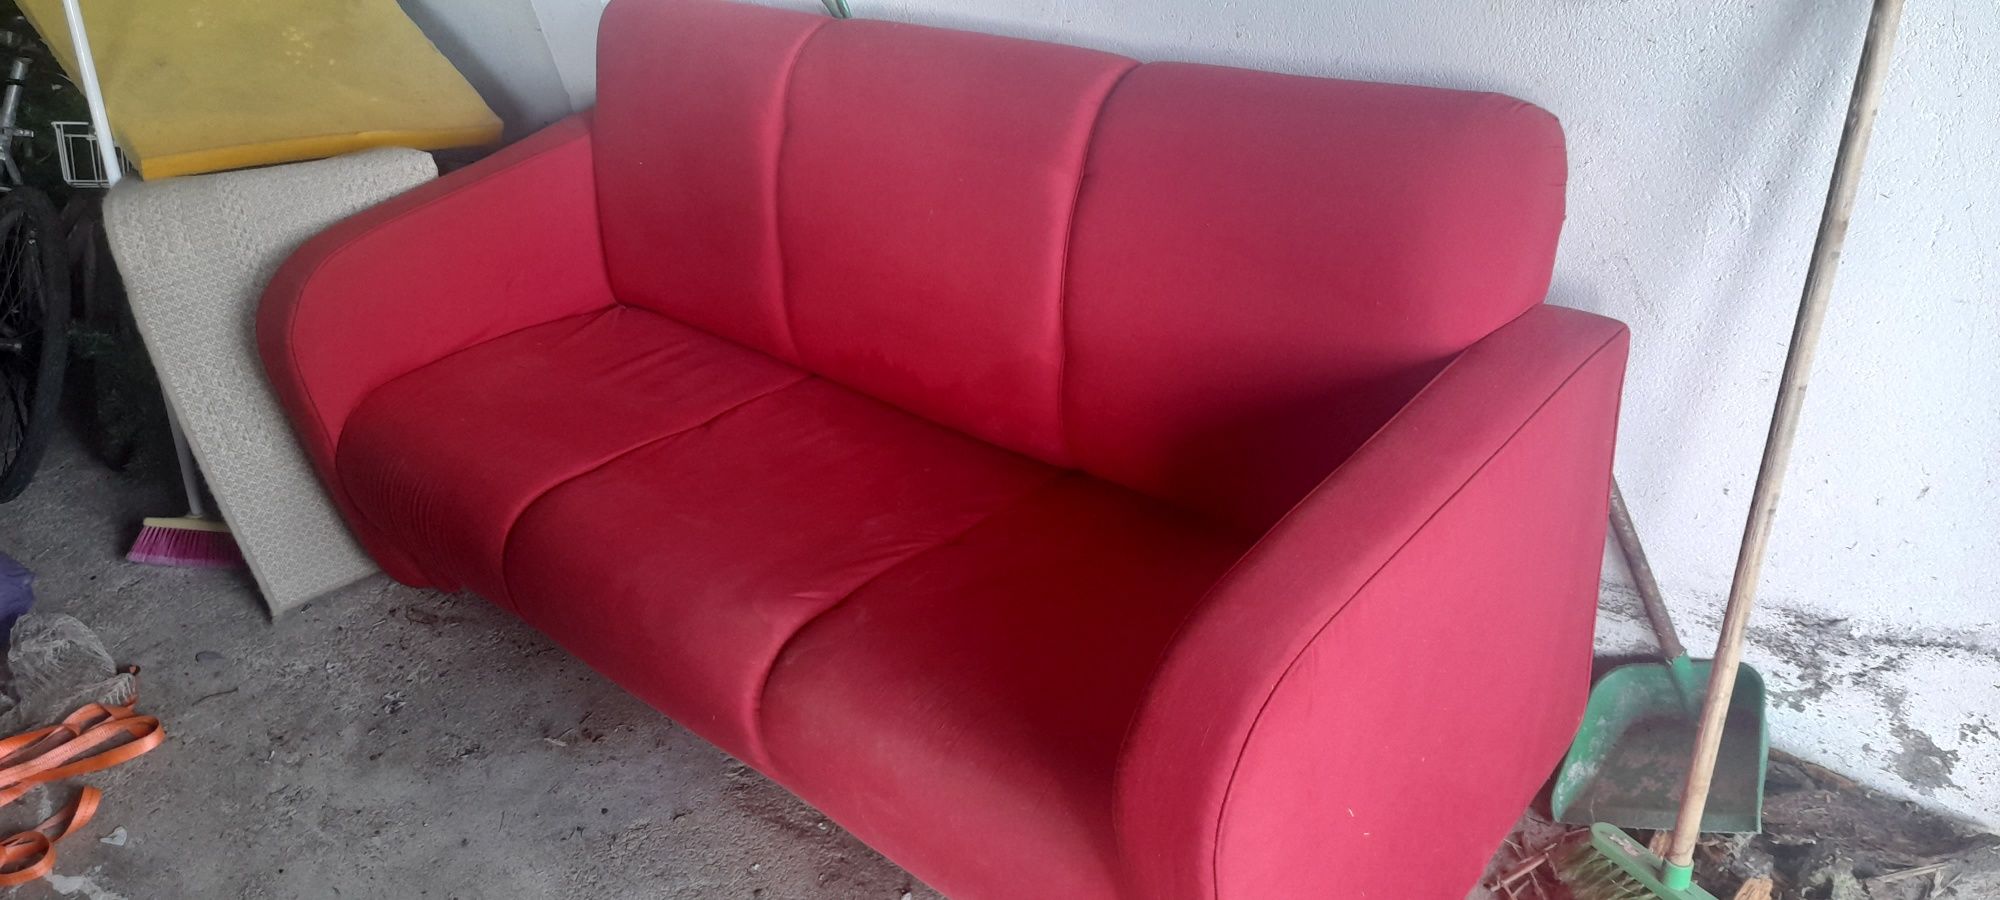 Sofa vermelho em otimo estado